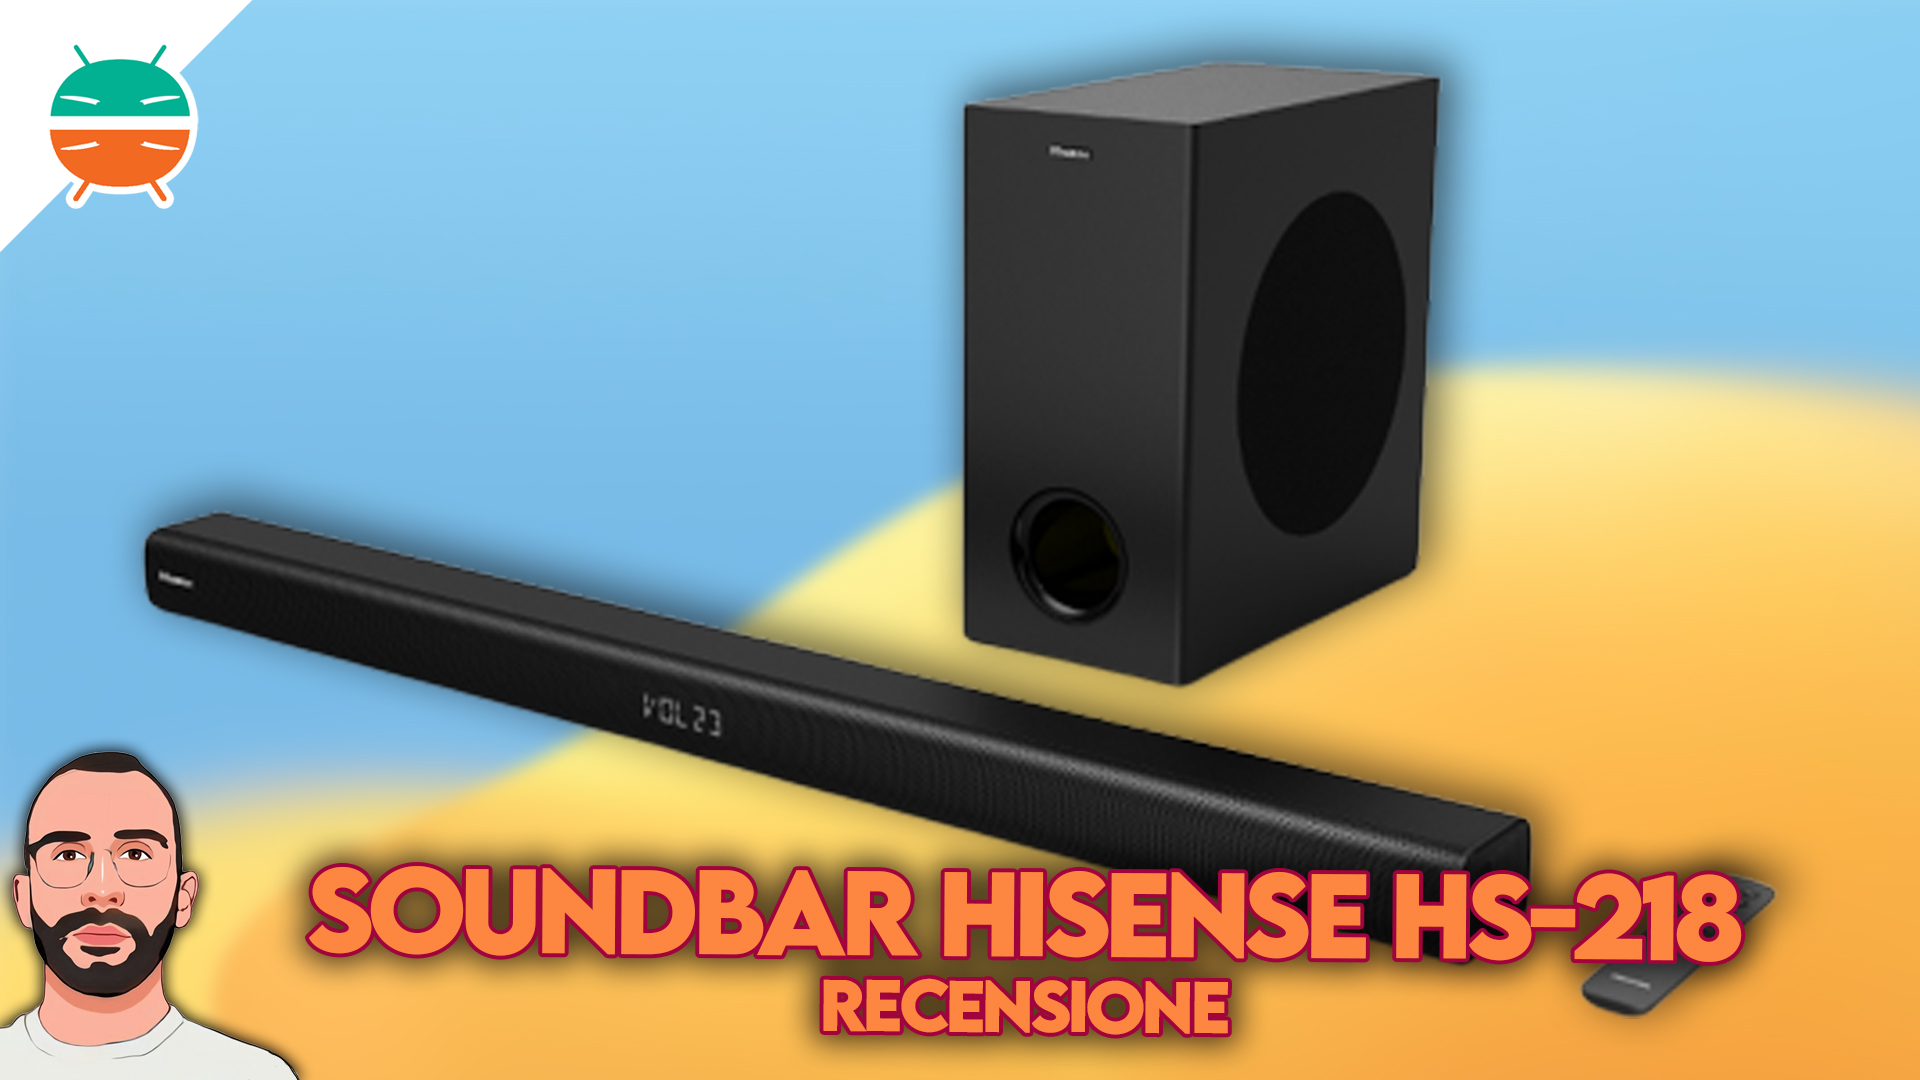 Barra de sonido Hisense HS218 ¡una experiencia sonora!